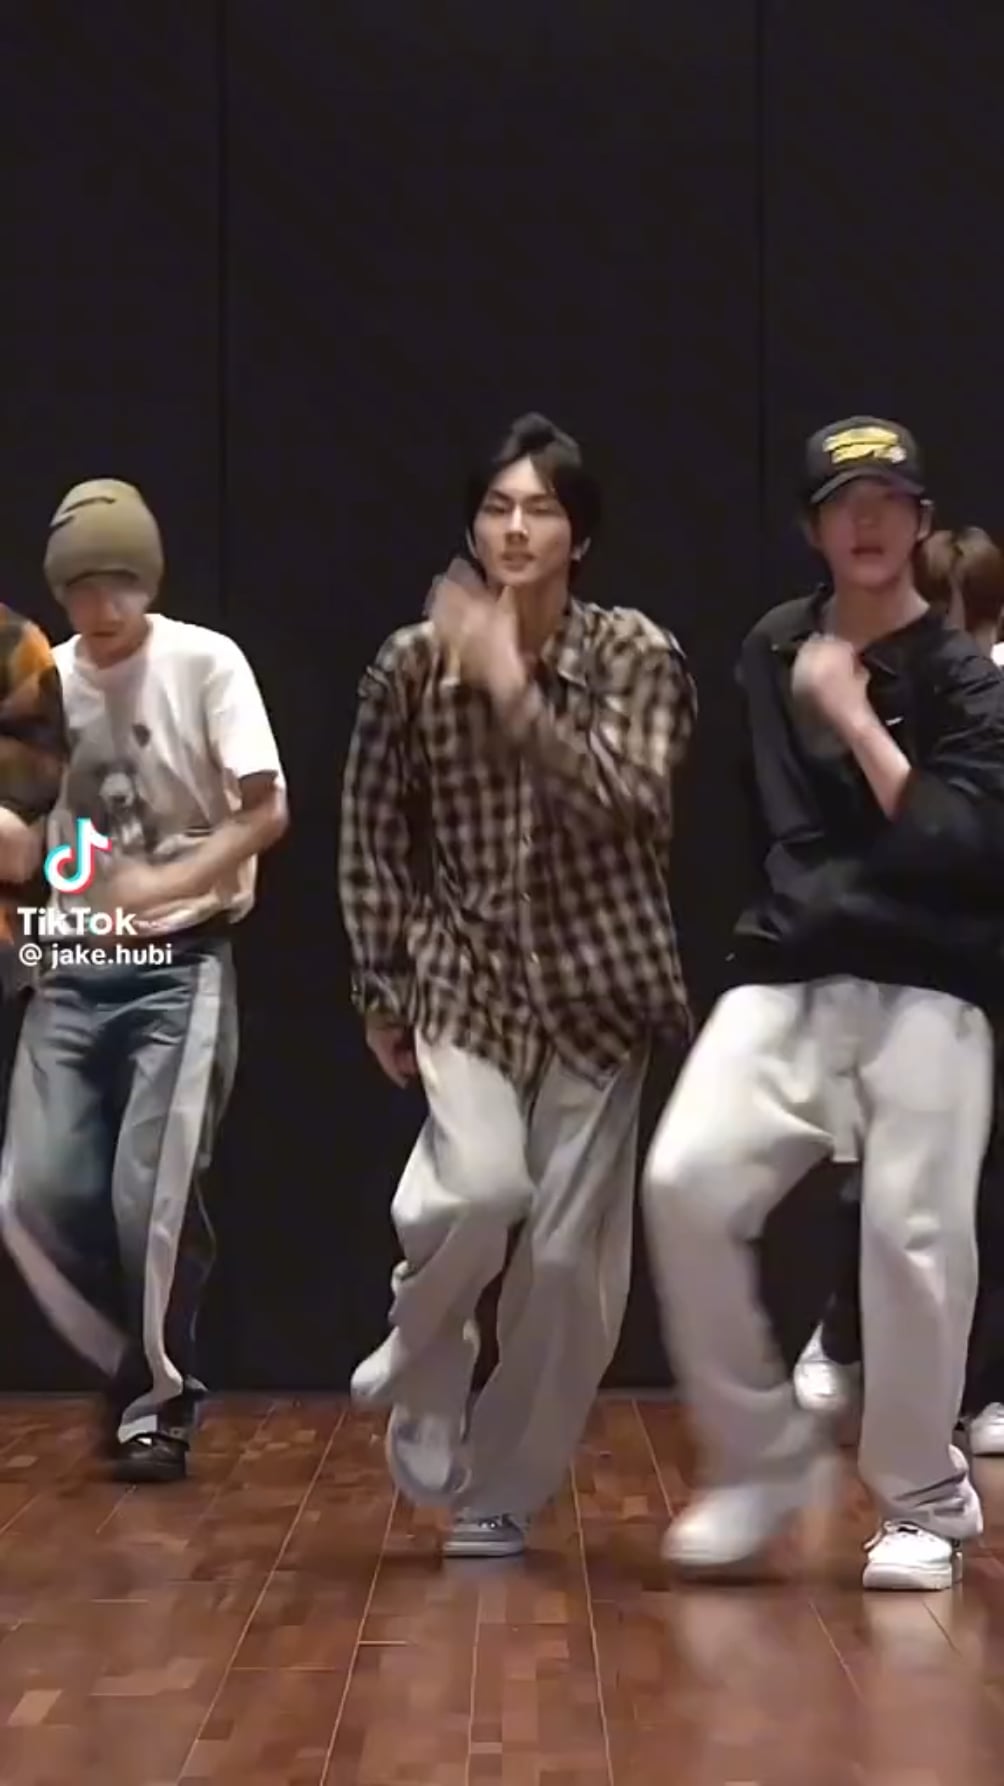 Jungwon's talent in dancing appreciation